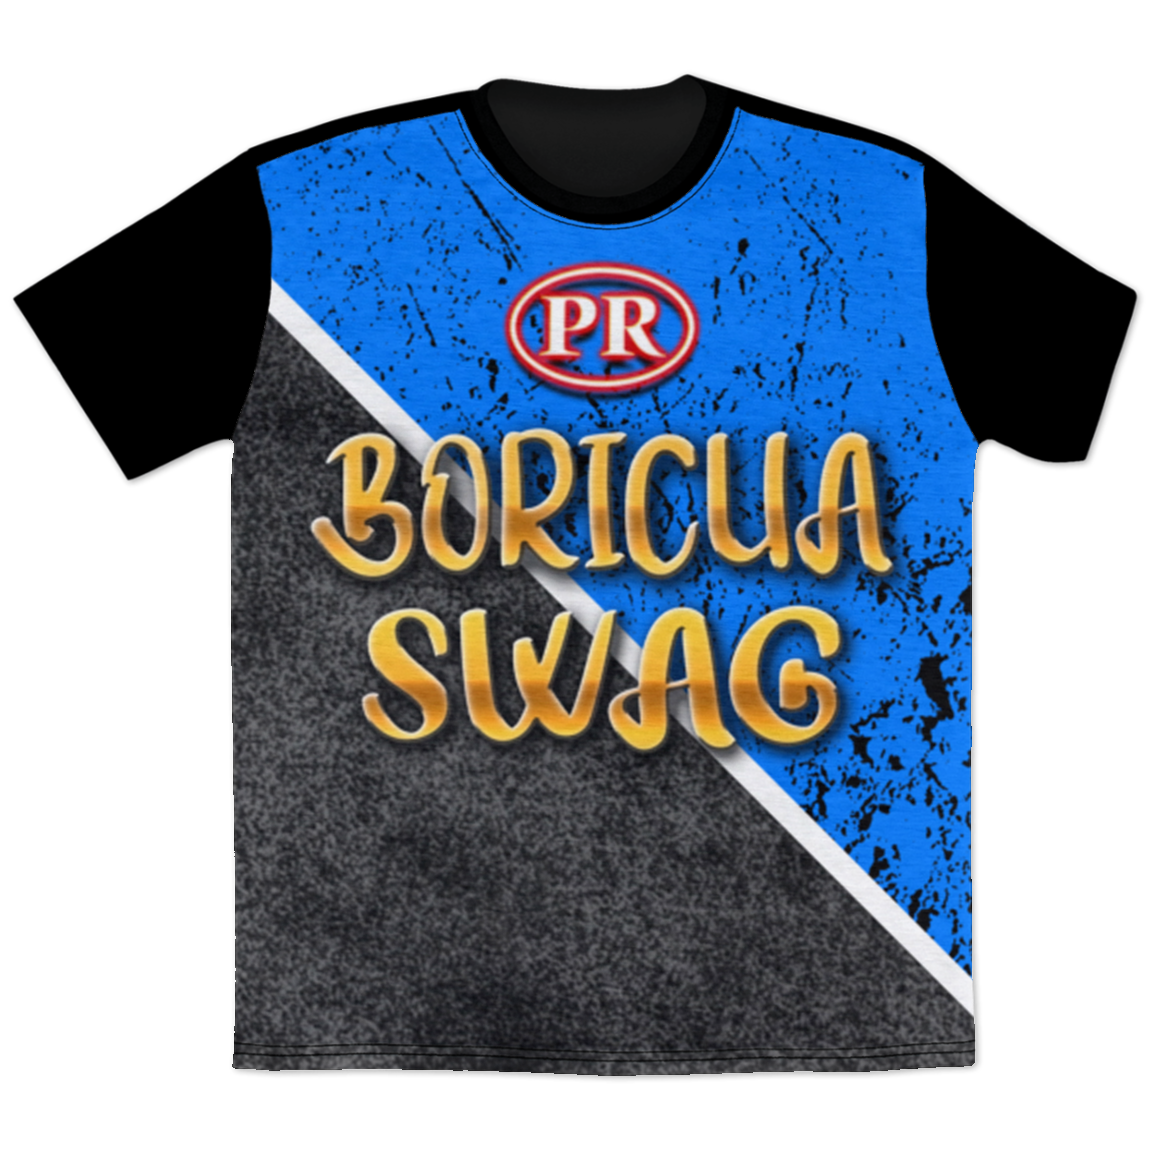 Boricua Swag T-Shirt - Puerto Rican Pride